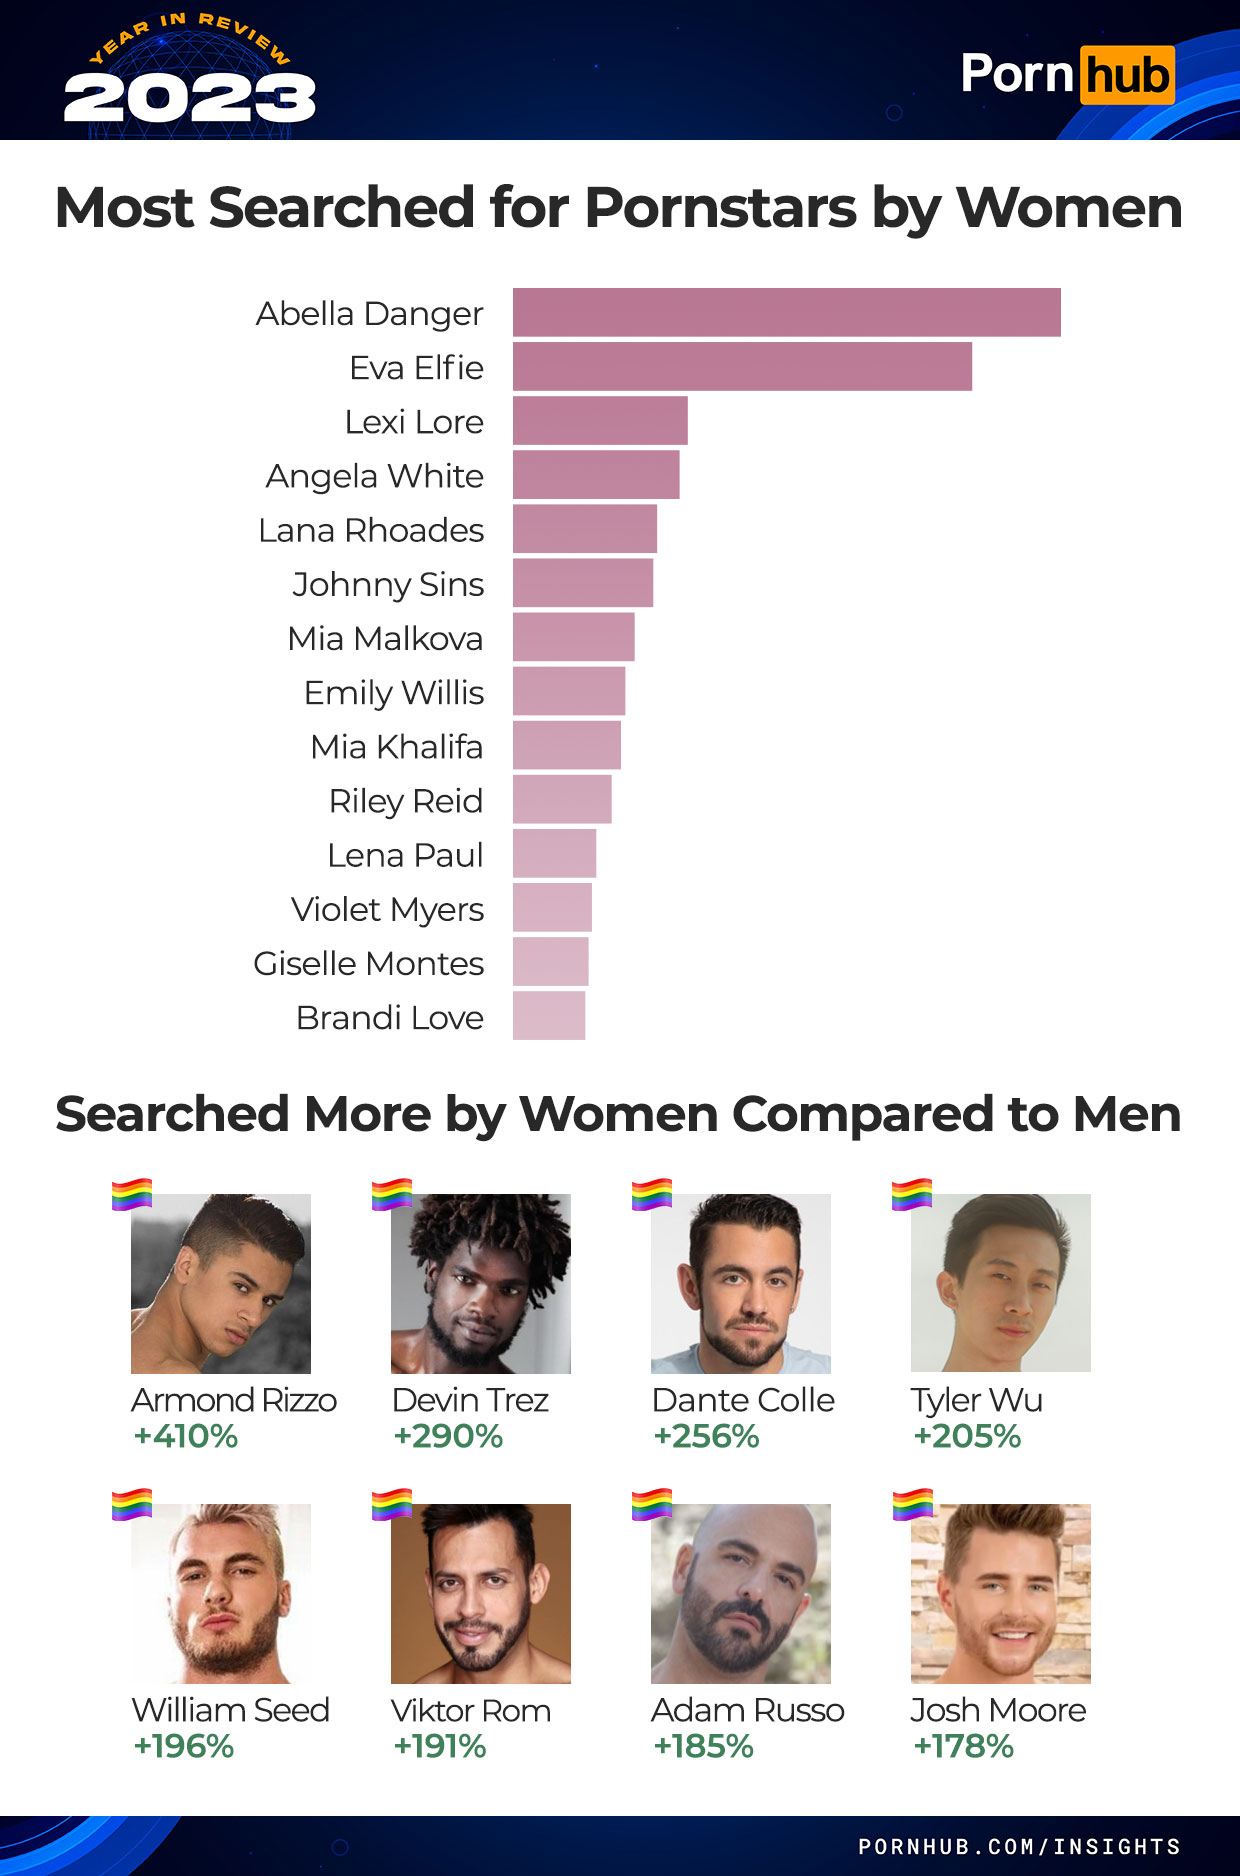 گزارش پورن هاب در مورد جستجوهای سکسی افراد